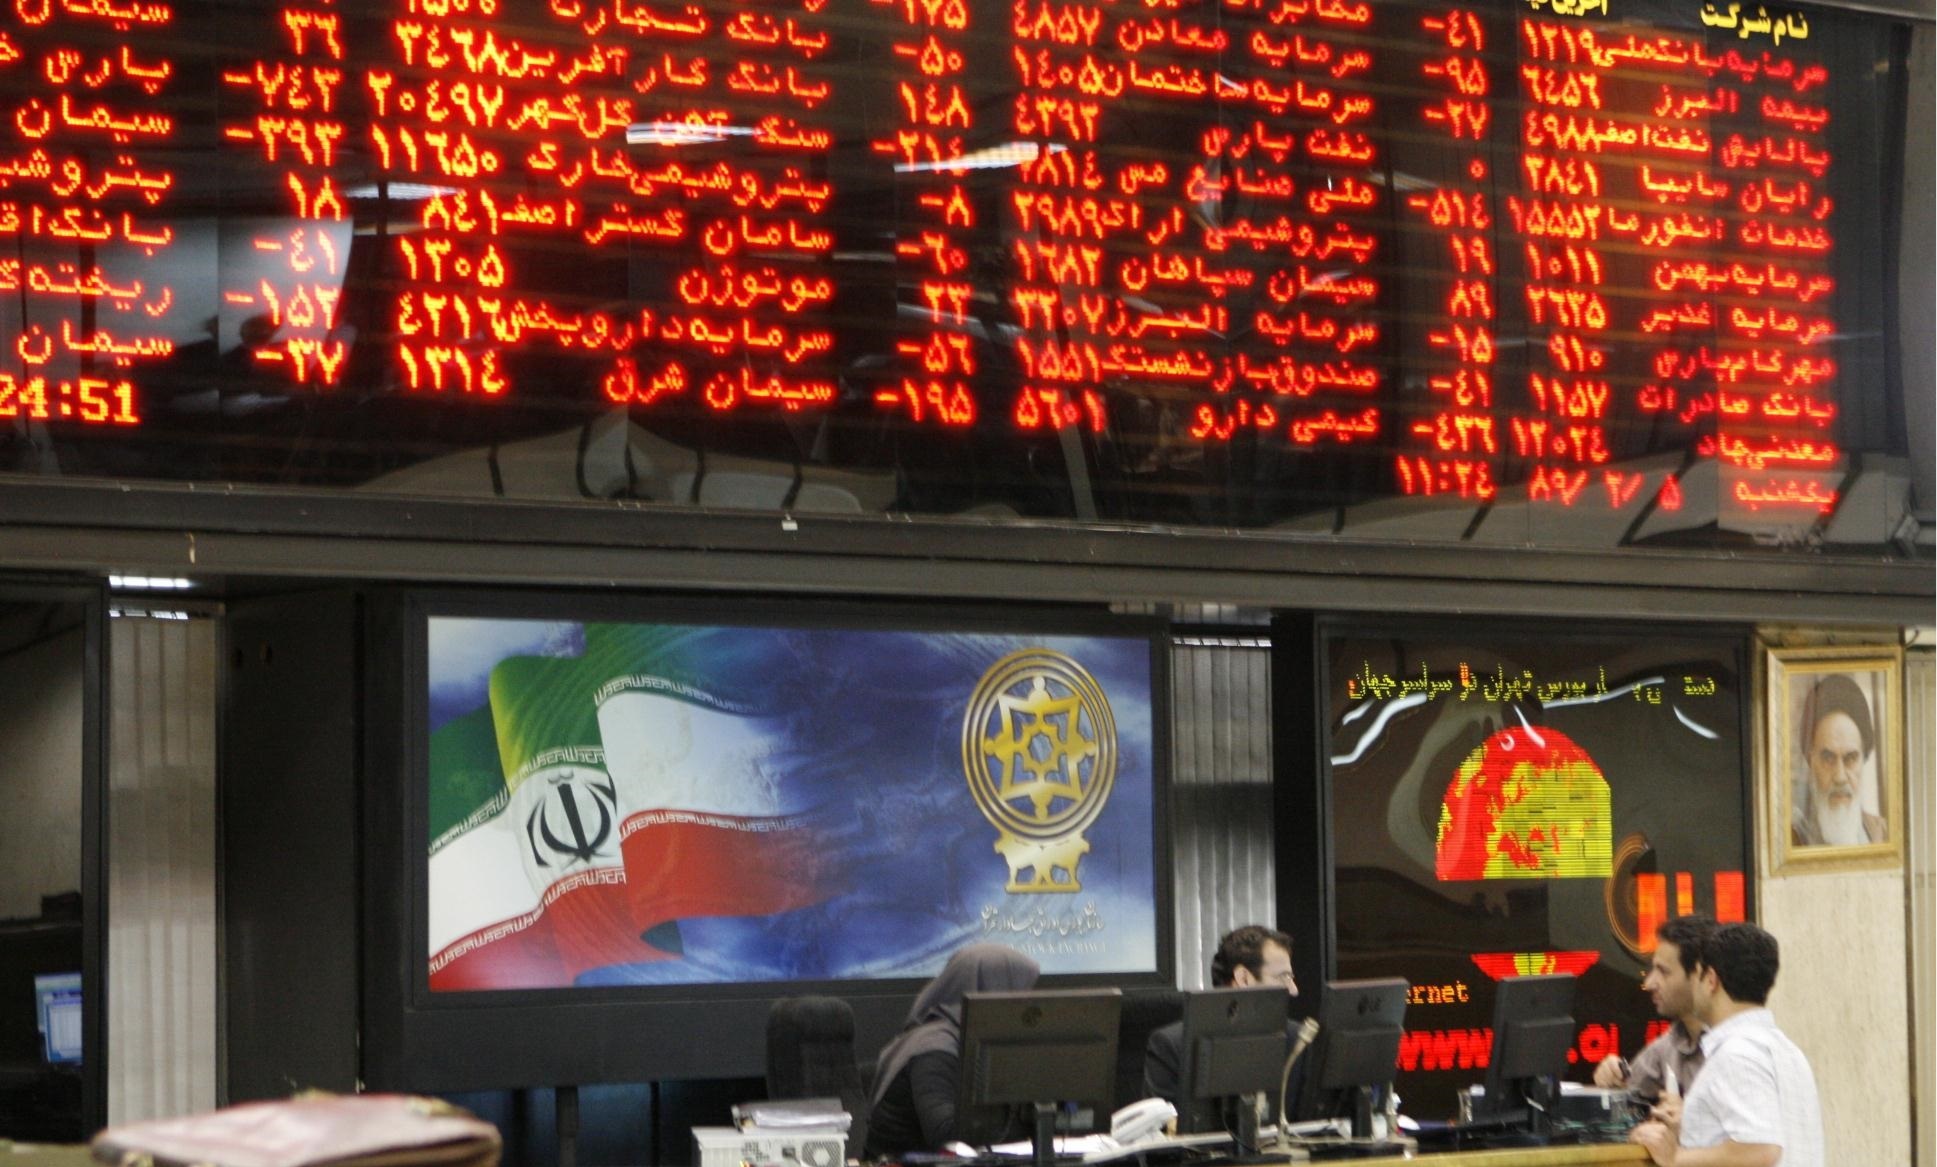 سرمایه گذاری خارجی در بورس ایران چقدر تأثیرگذار است؟/ نقش رایزنی های دیپلماتیک در بازار سرمایه